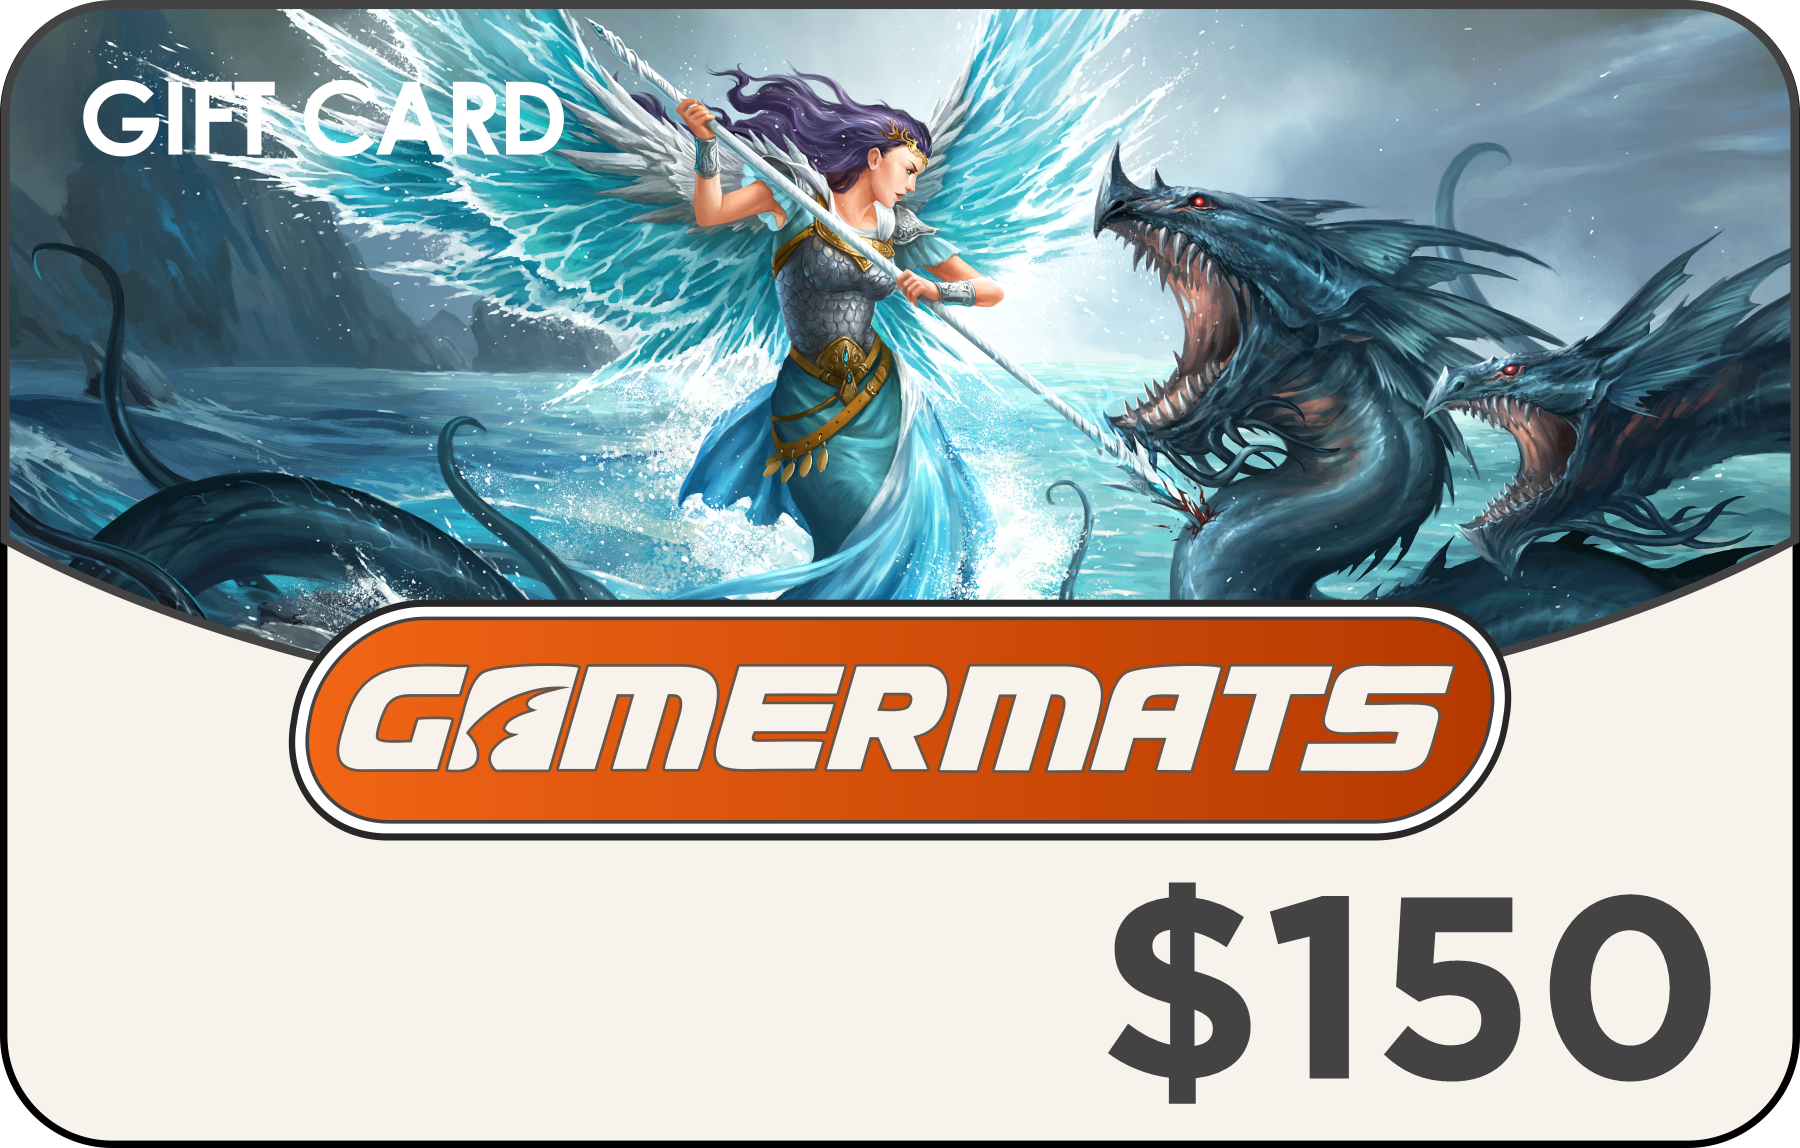 GamerMats Gift Card 50